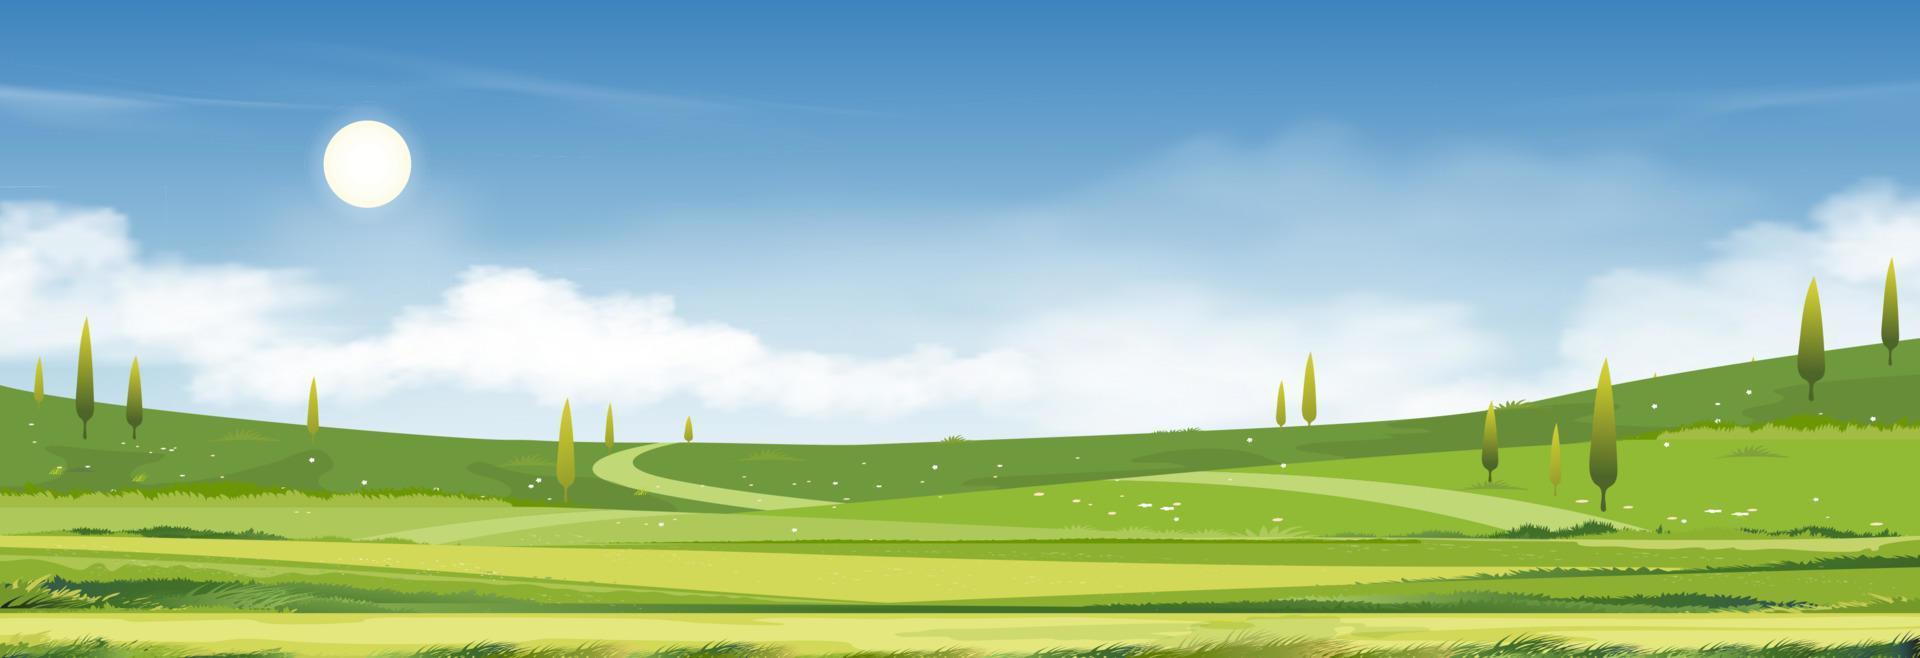 lentetijd, zomer zonnige dag landschap in dorp met groen veld, wolk en blauwe hemel background.rural platteland met berg, grasland en zonlicht in de ochtend, vector cartoon natuur banner